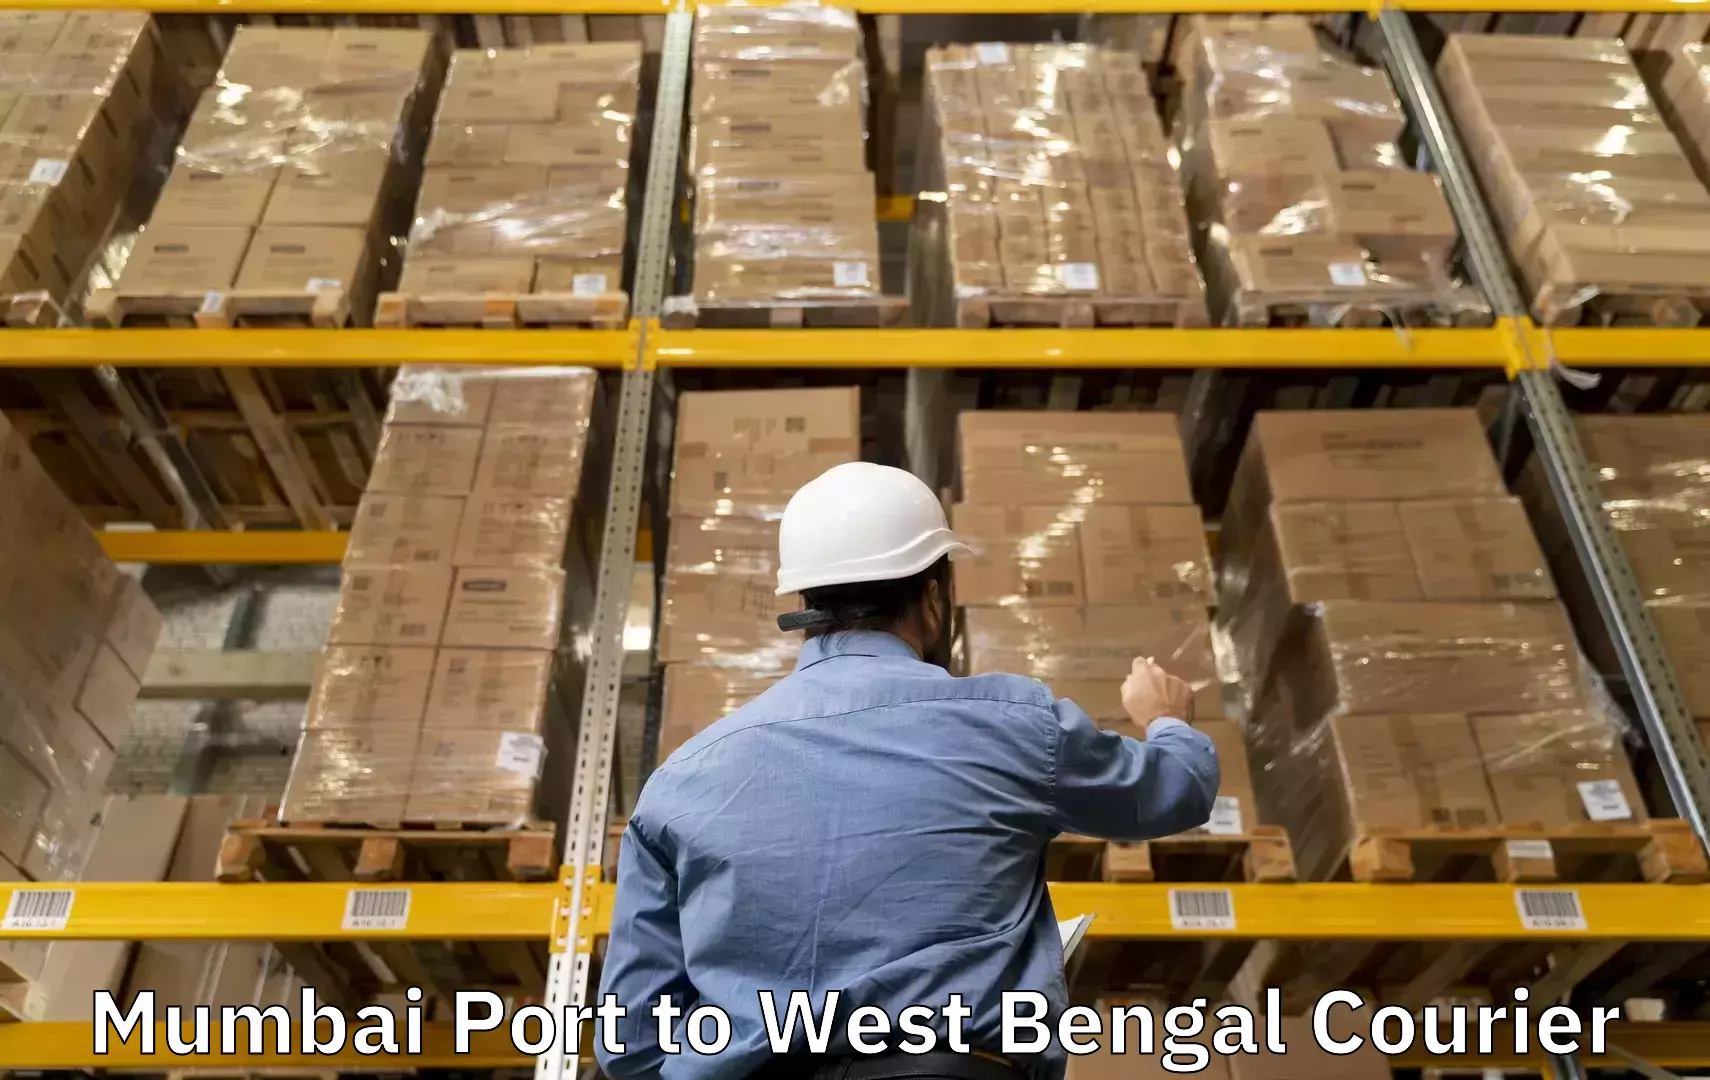 Baggage shipping schedule Mumbai Port to Panagarh